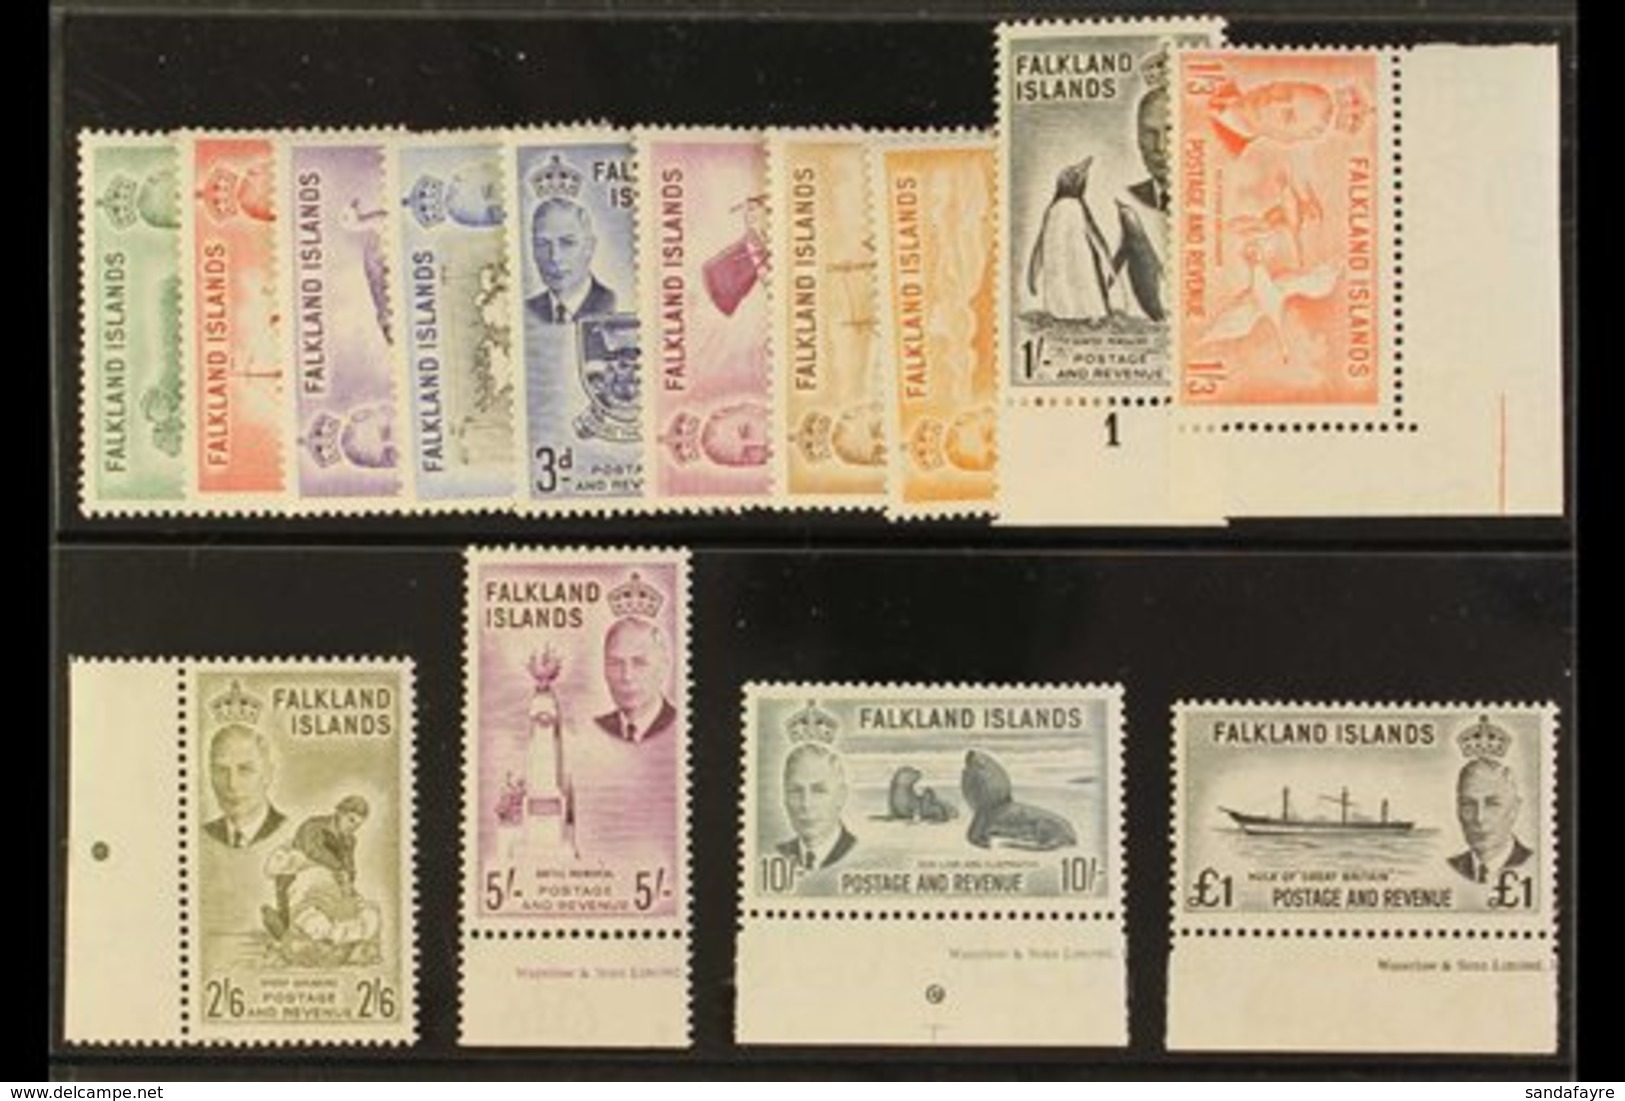 1952 KGVI Definitives Complete Set, SG 172/85, Very Fine Never Hinged Mint. (14 Stamps) For More Images, Please Visit Ht - Falklandeilanden